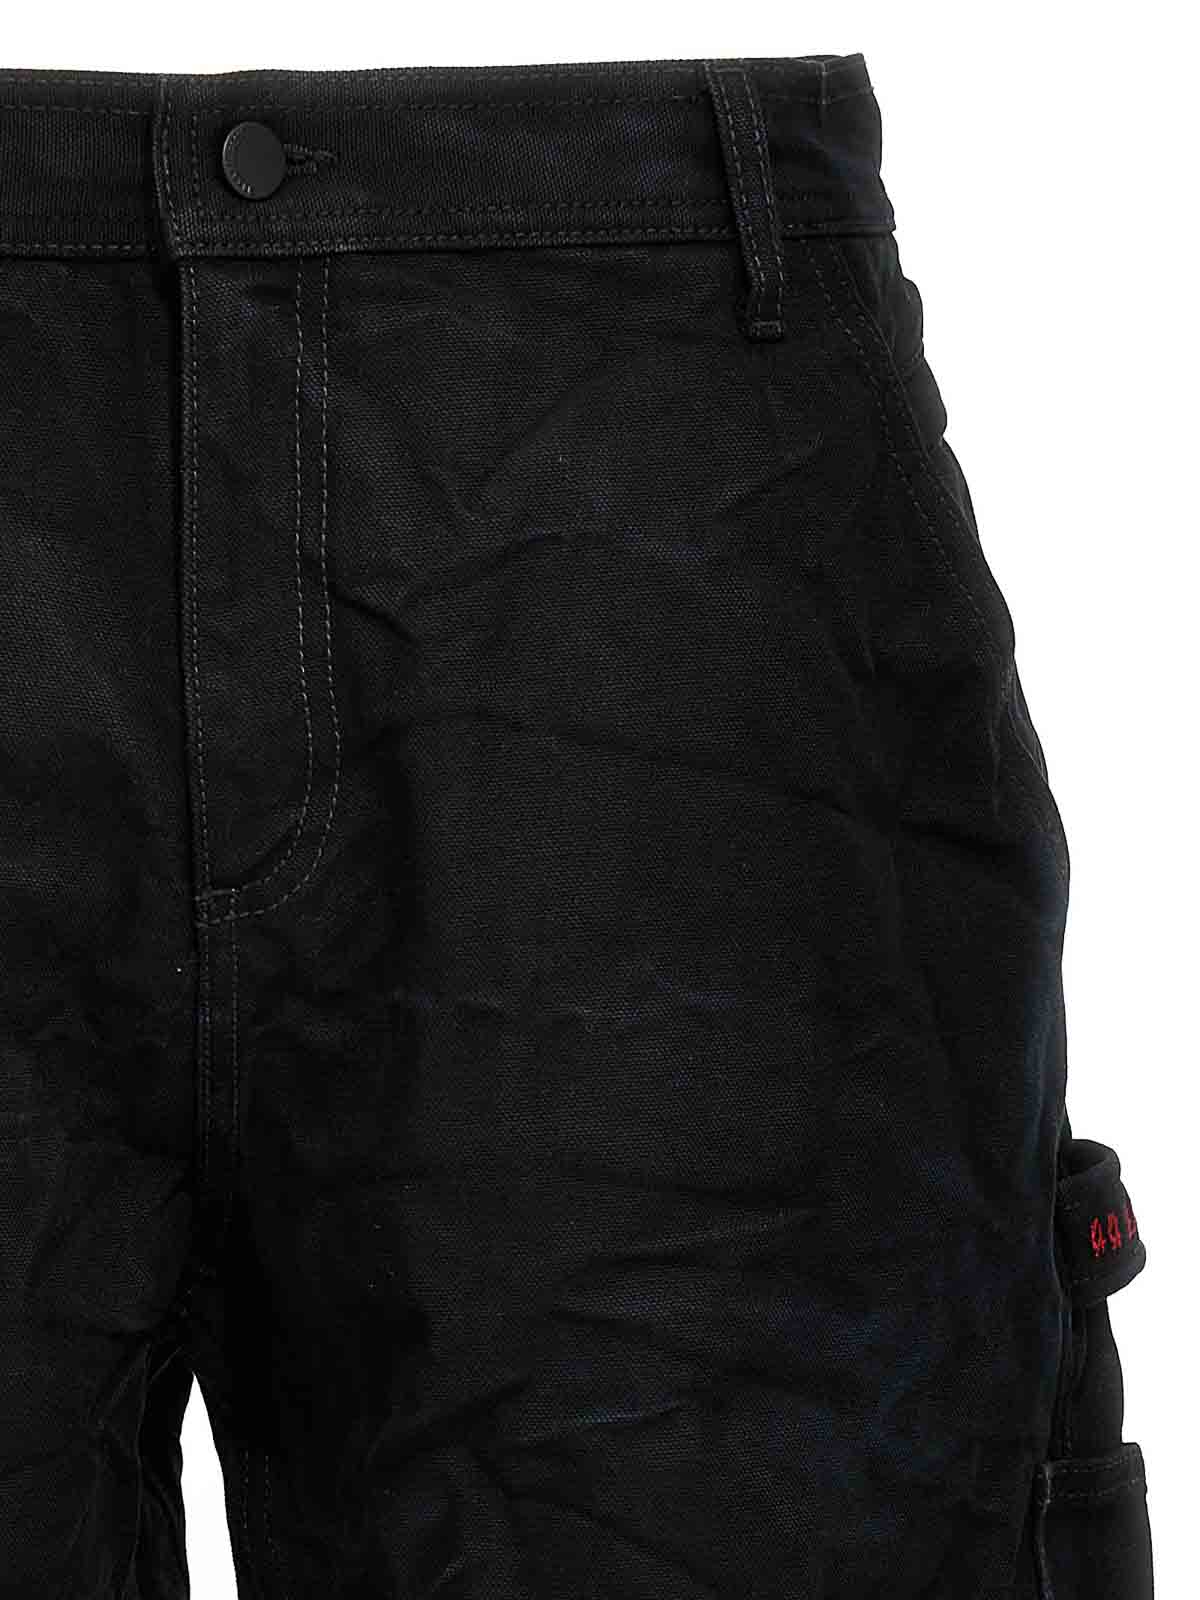 Shop 44 Label Group Carpenter Jeans In Black